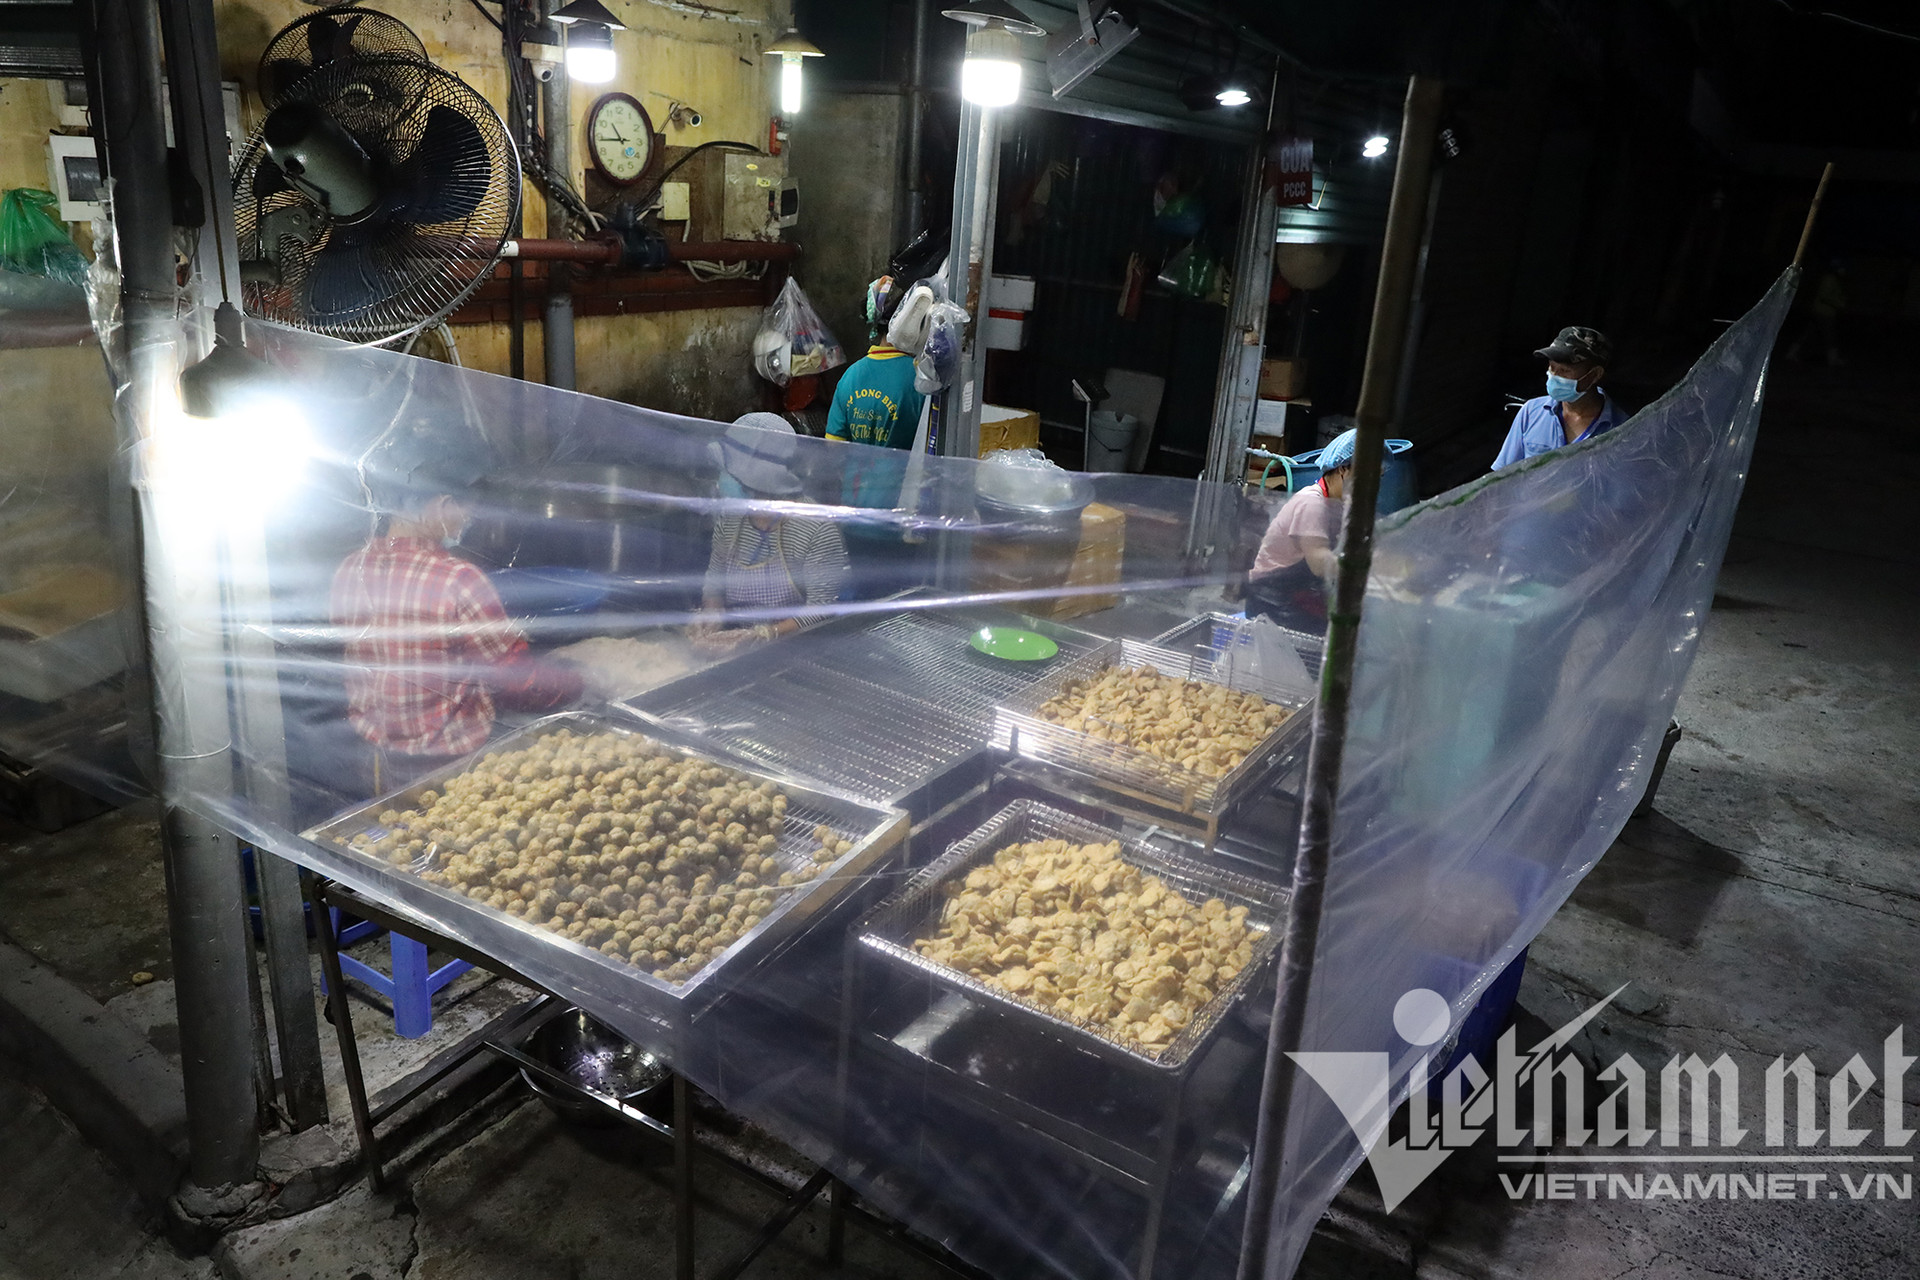 Chợ đầu mối nổi tiếng nhất Hà Nội mở lại sau hai tháng đóng cửa - Ảnh 7.